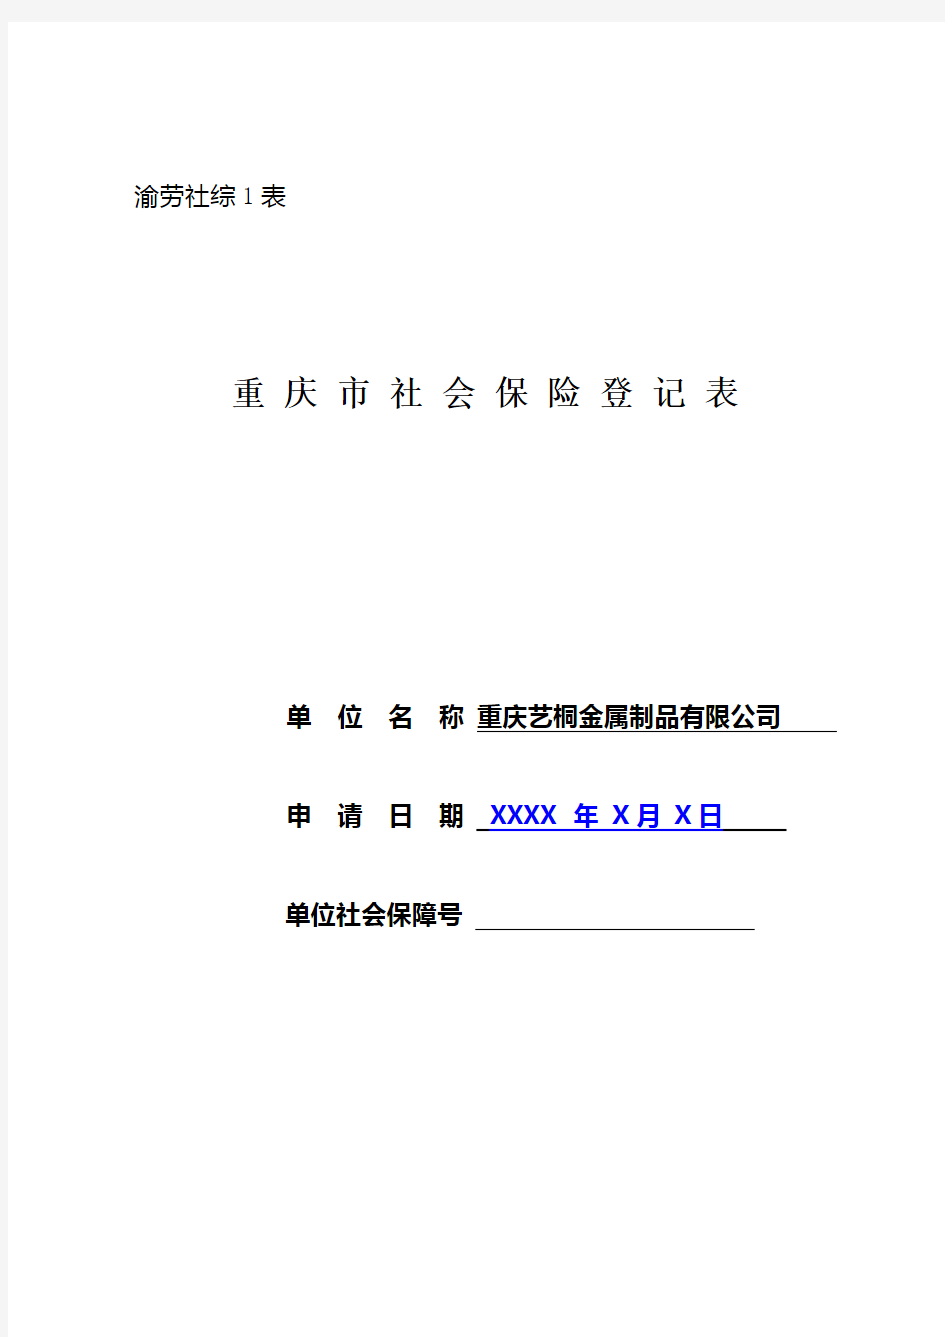 重庆市社会保险登记表(样表)